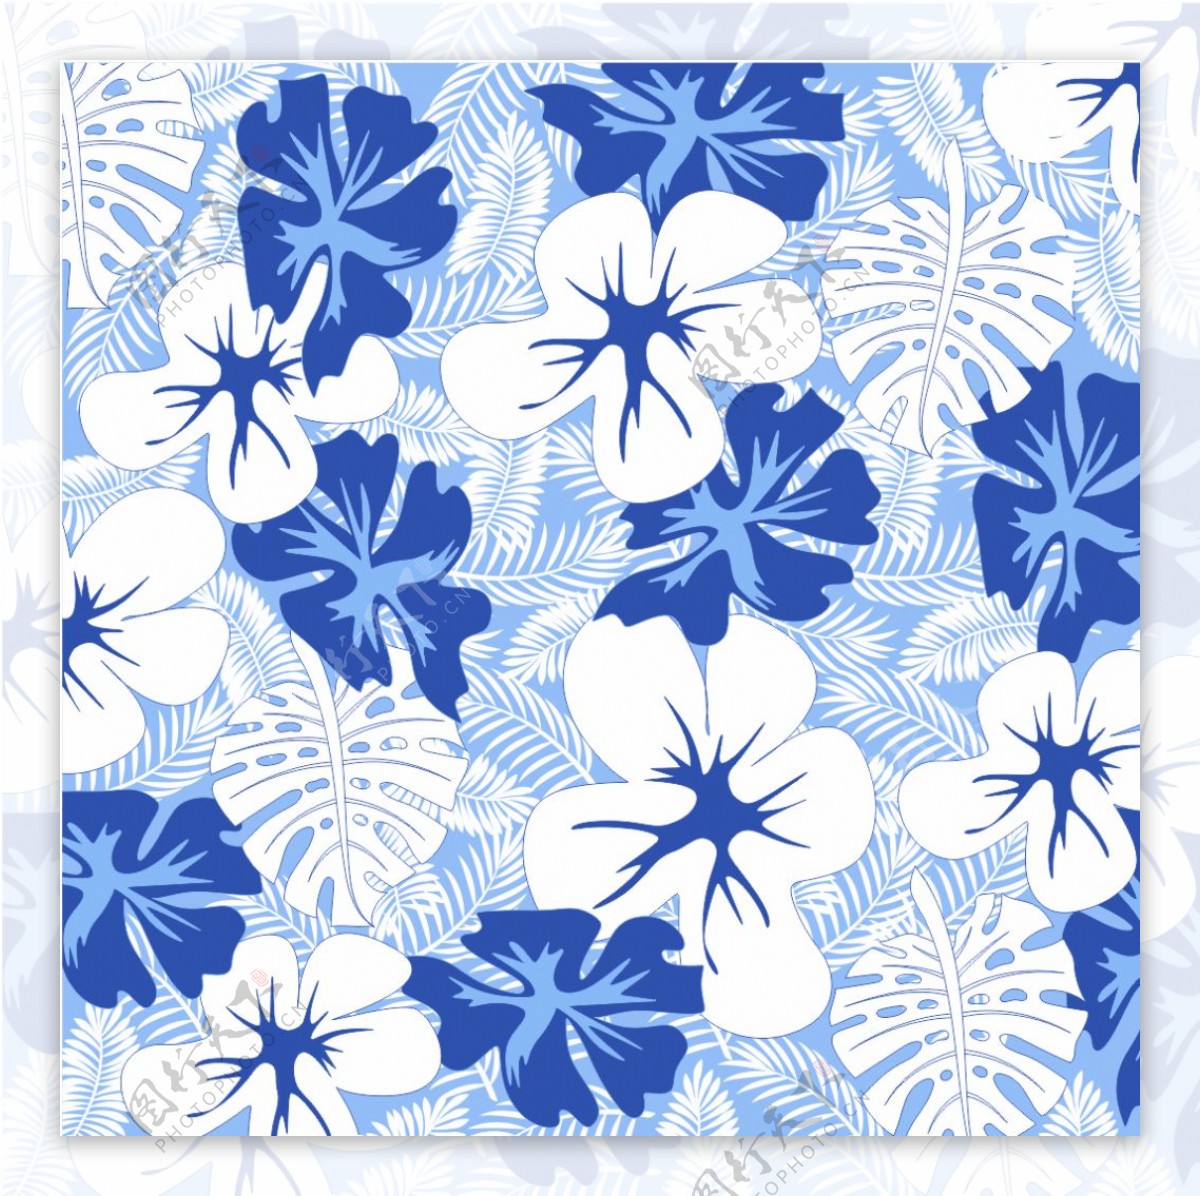 热带雨林蓝色素材图案印花面料图案